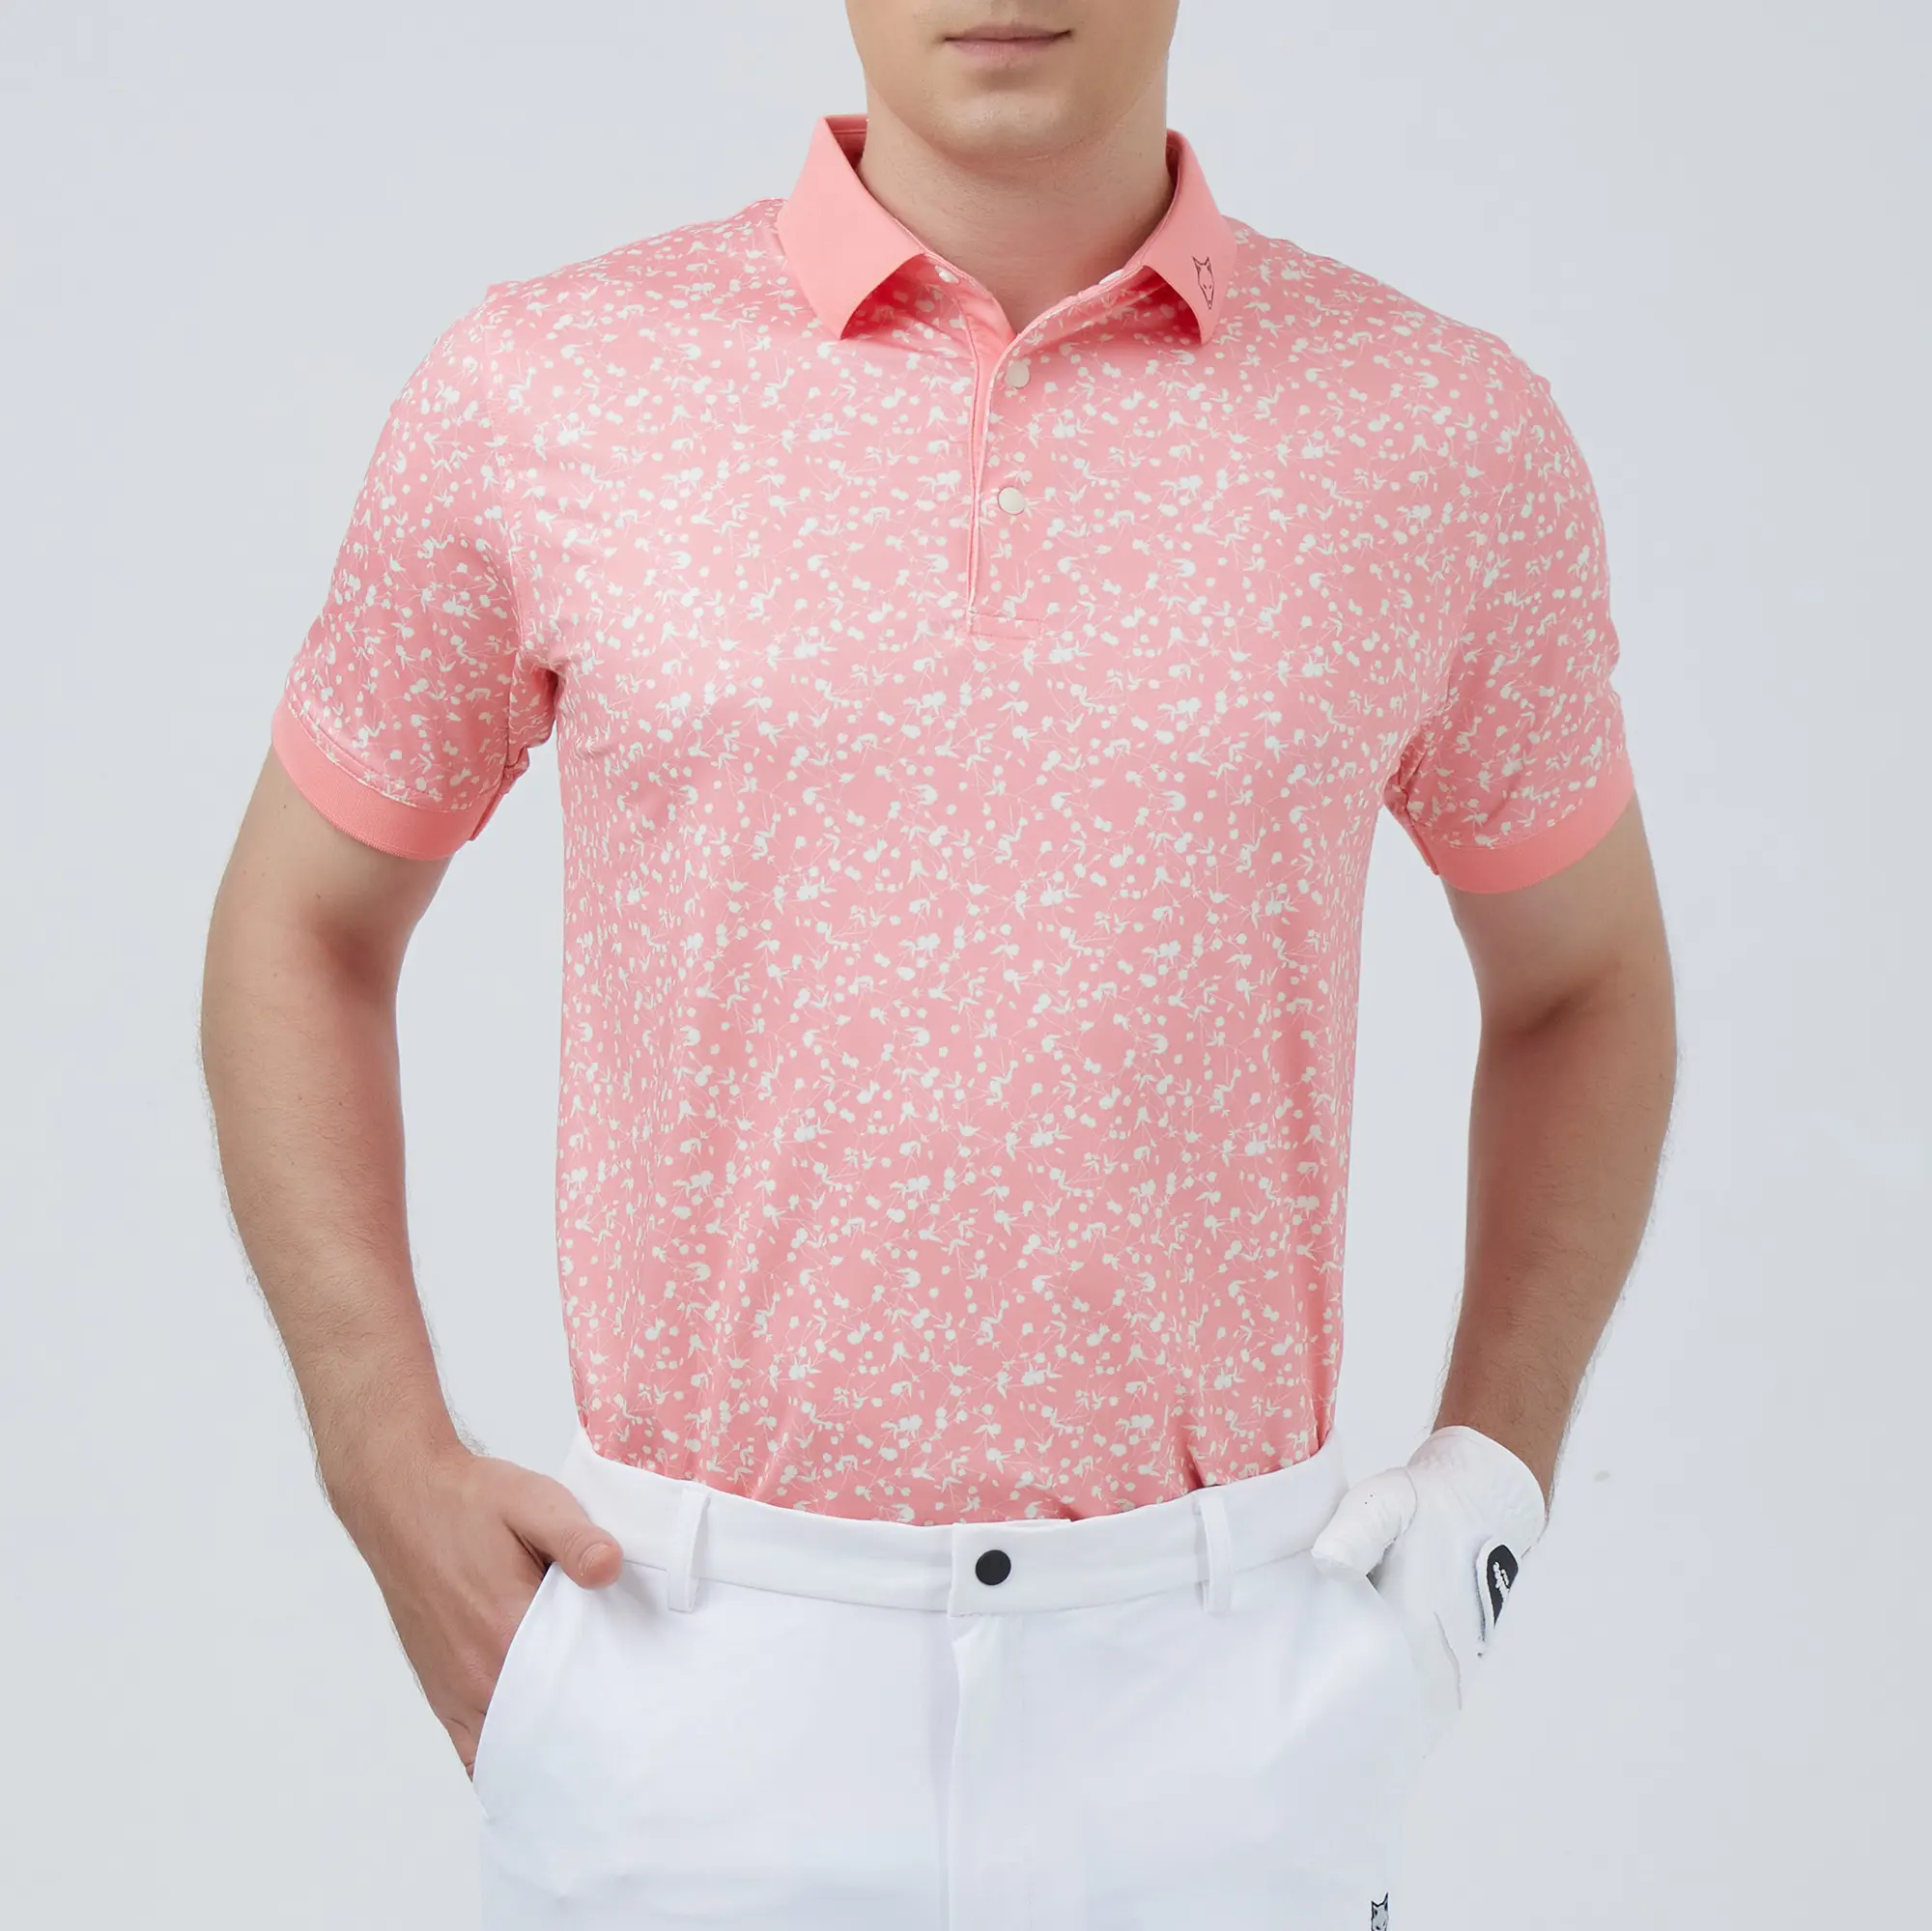 Großhandel Herren-T-Shirt: Hochfester und faltenresistenter Polyester-Spandex, OEM ODM, Hersteller aus Vietnam